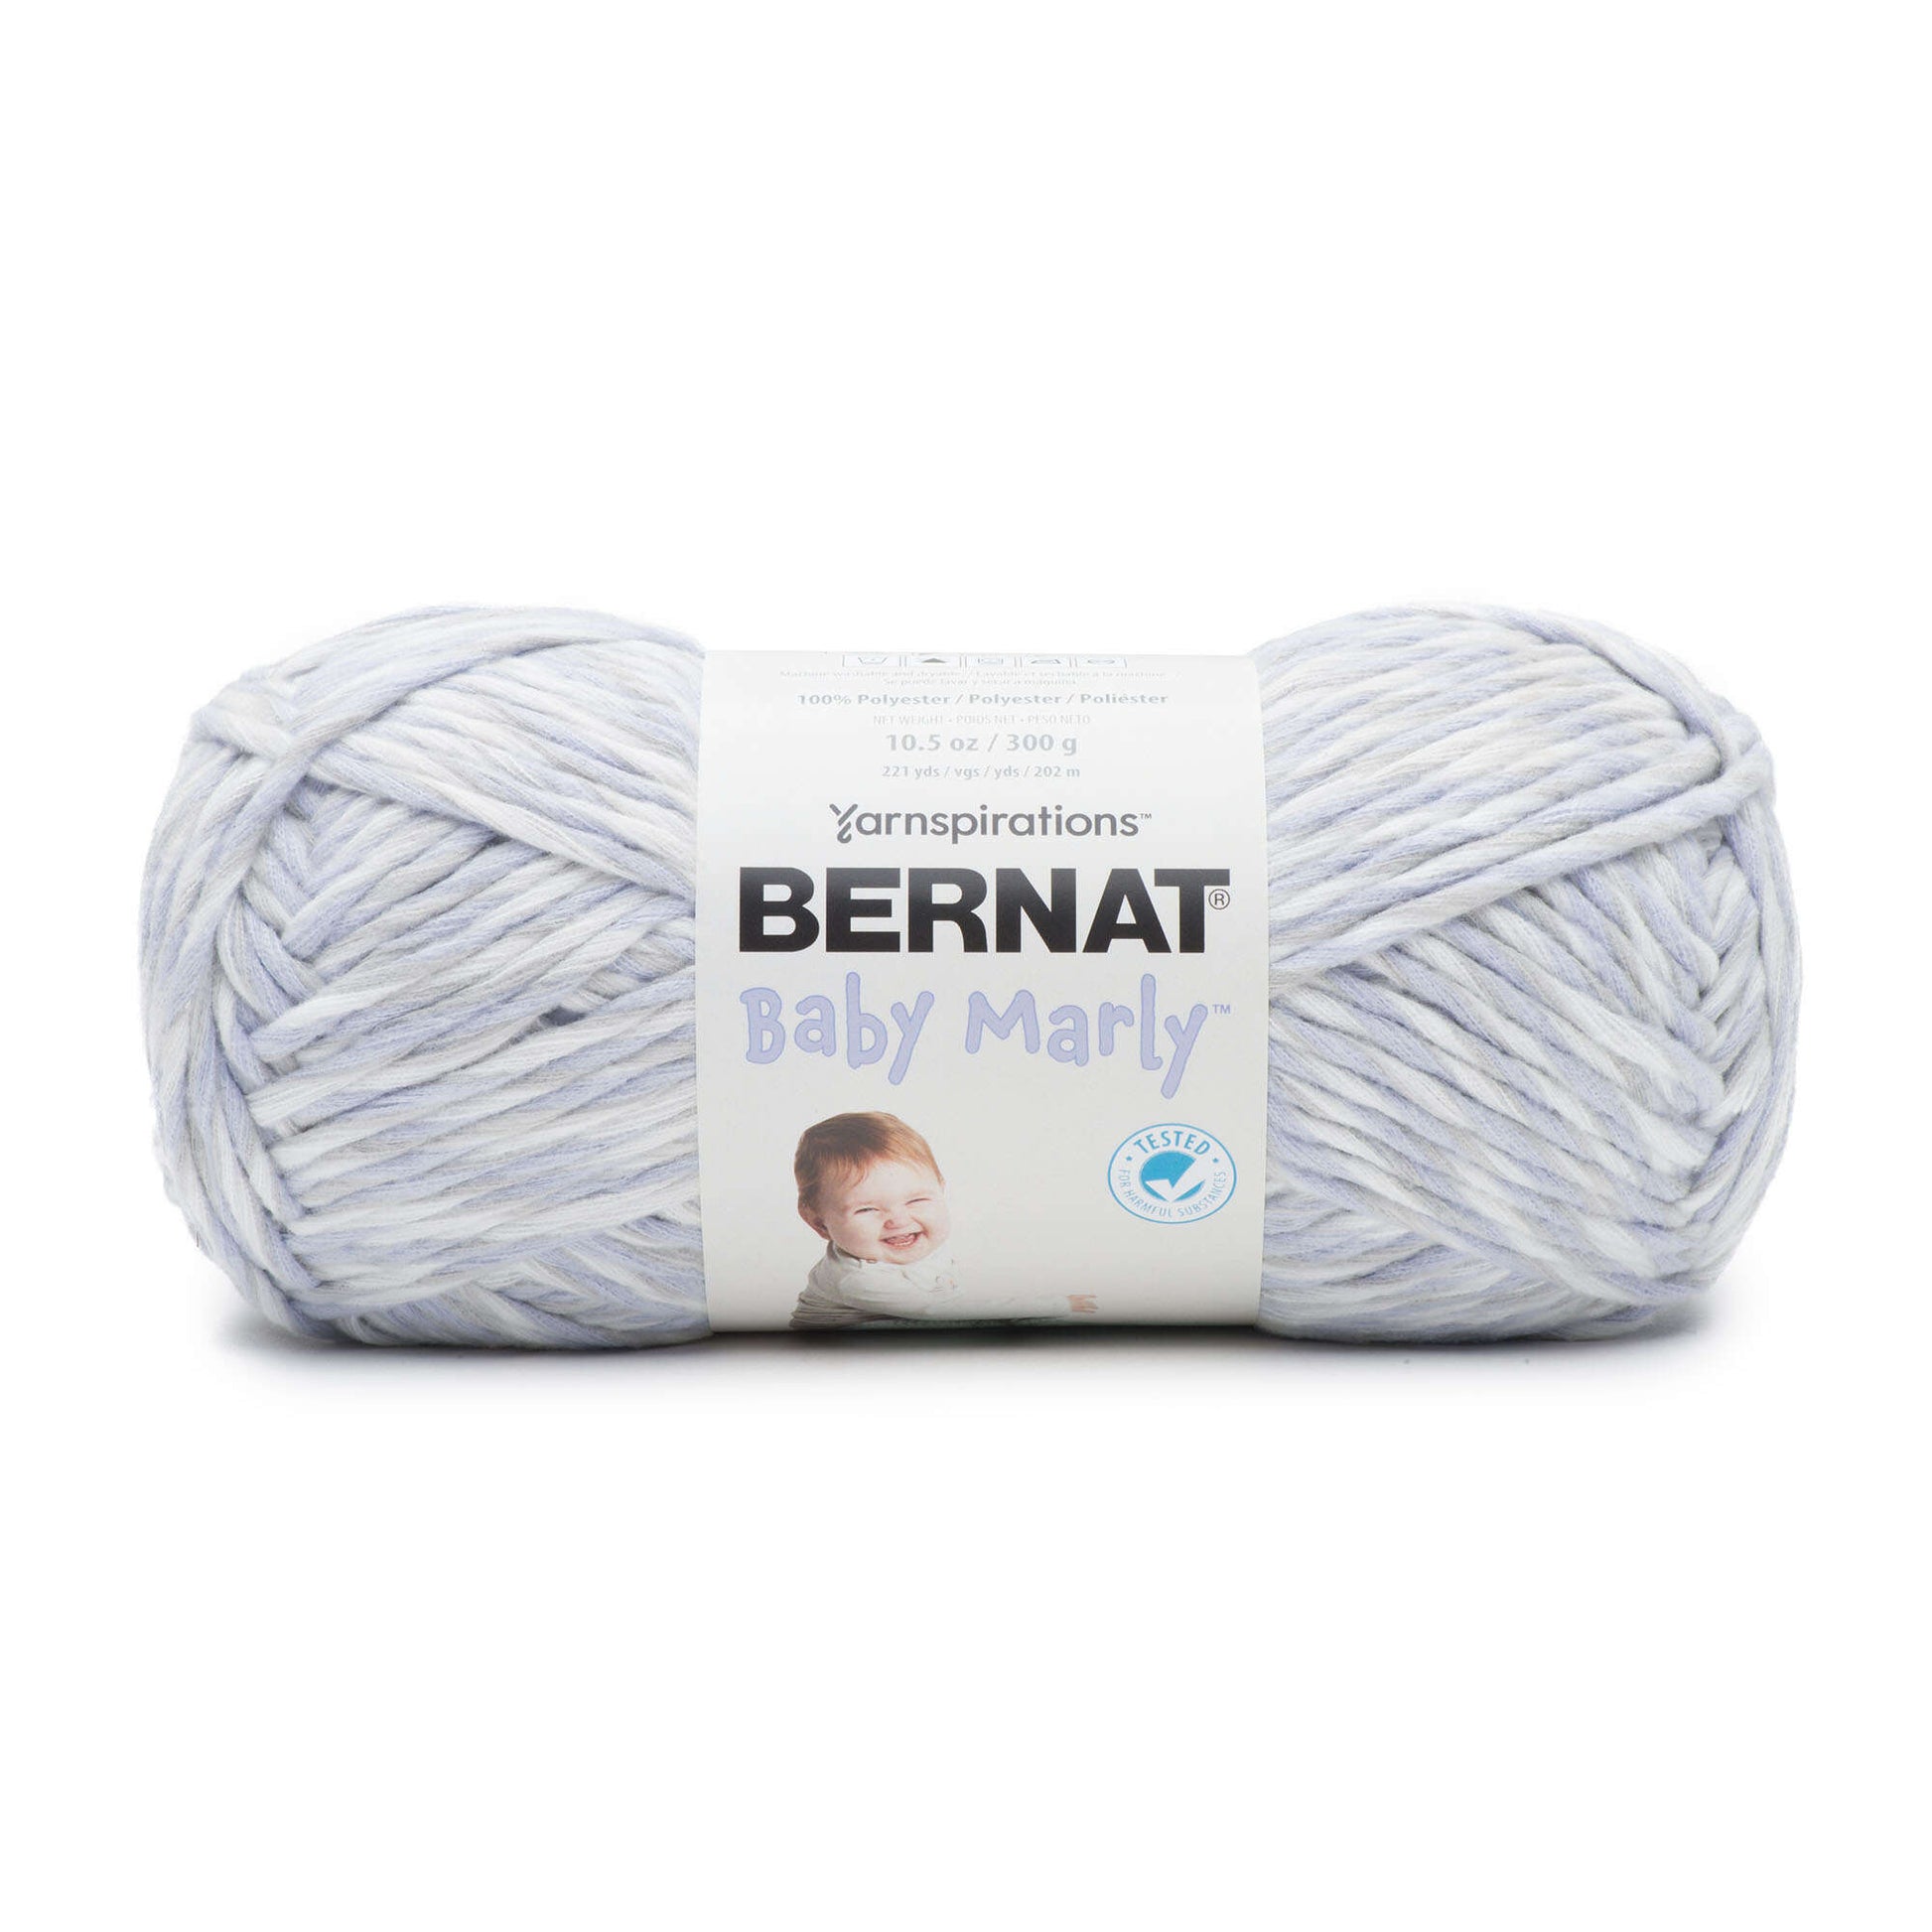 Bernat Baby Marly Yarn - Discontinued